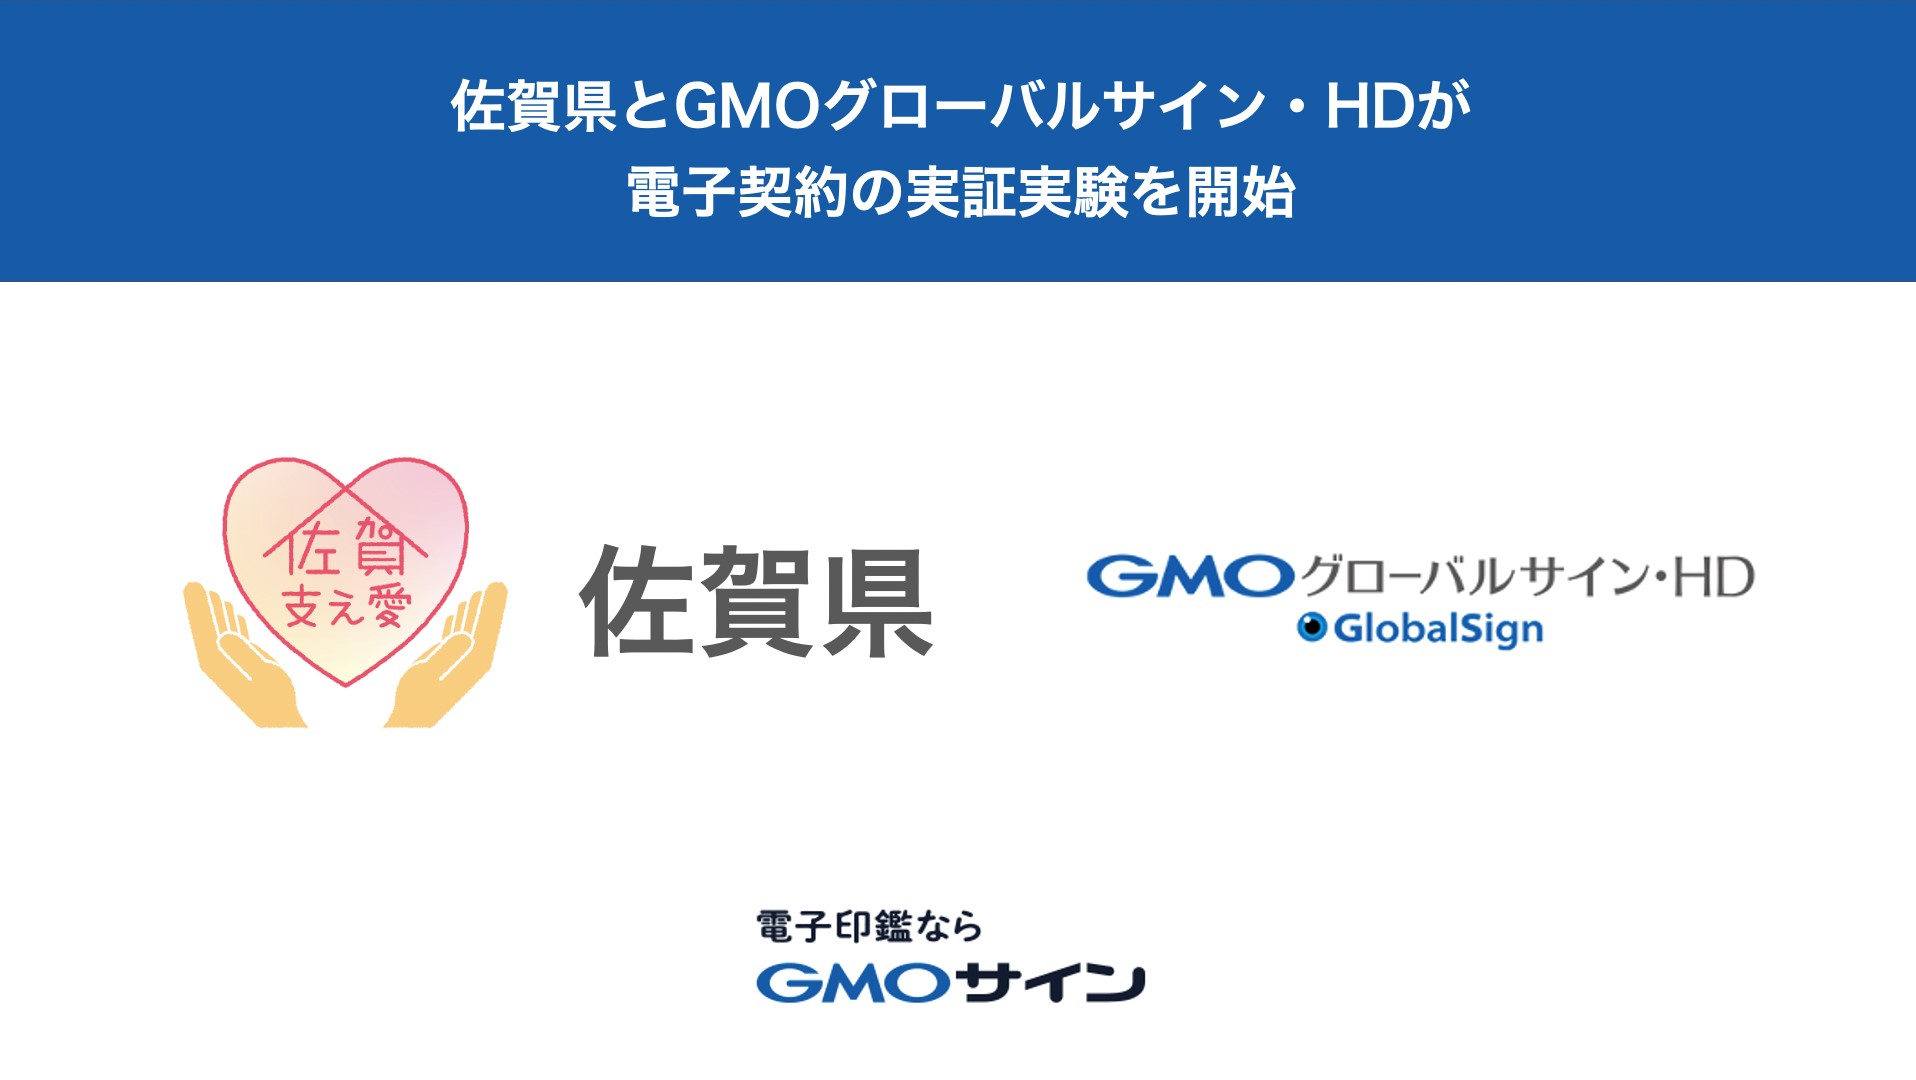 佐賀県がGMOグローバルサイン・HDと脱ハンコに向けた電子契約の実証実験を開始